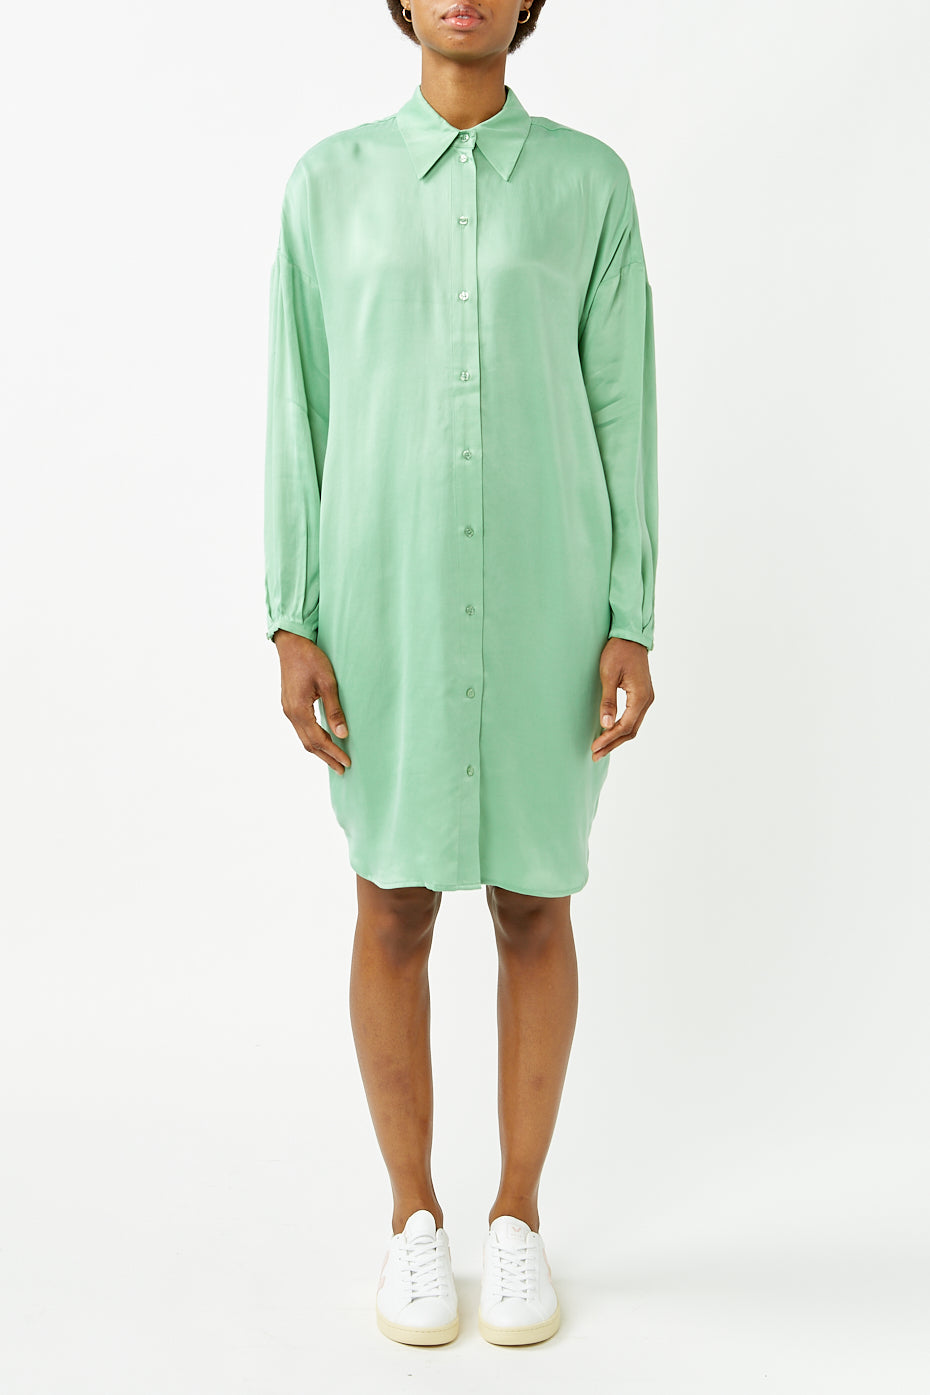 Selected Femme Absinthe Green Irene Shirt Dress